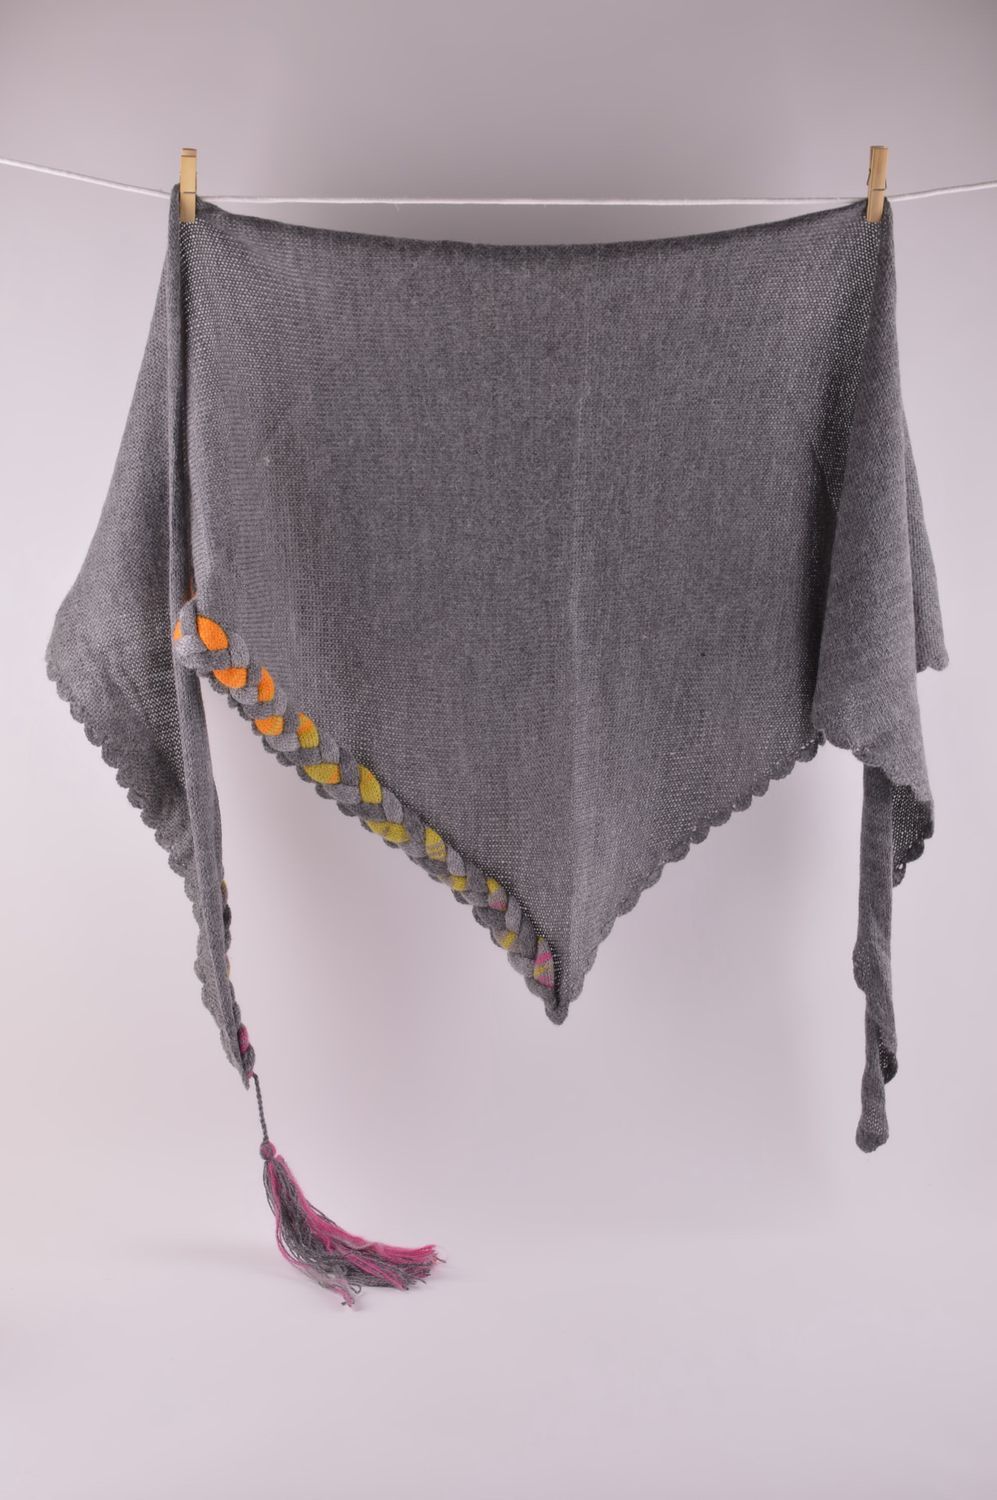 Вязаная шаль ручной работы женская накидка большой серый шарф вязаная вещь фото 5